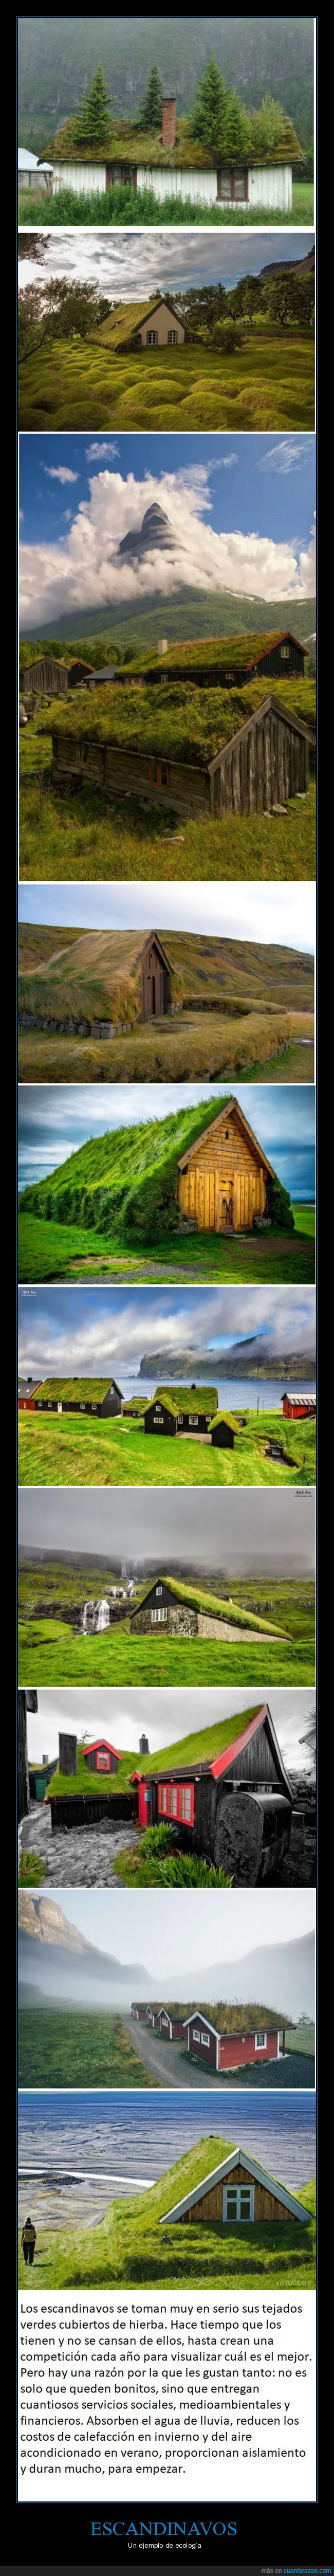 escandinavos,casas,tejados